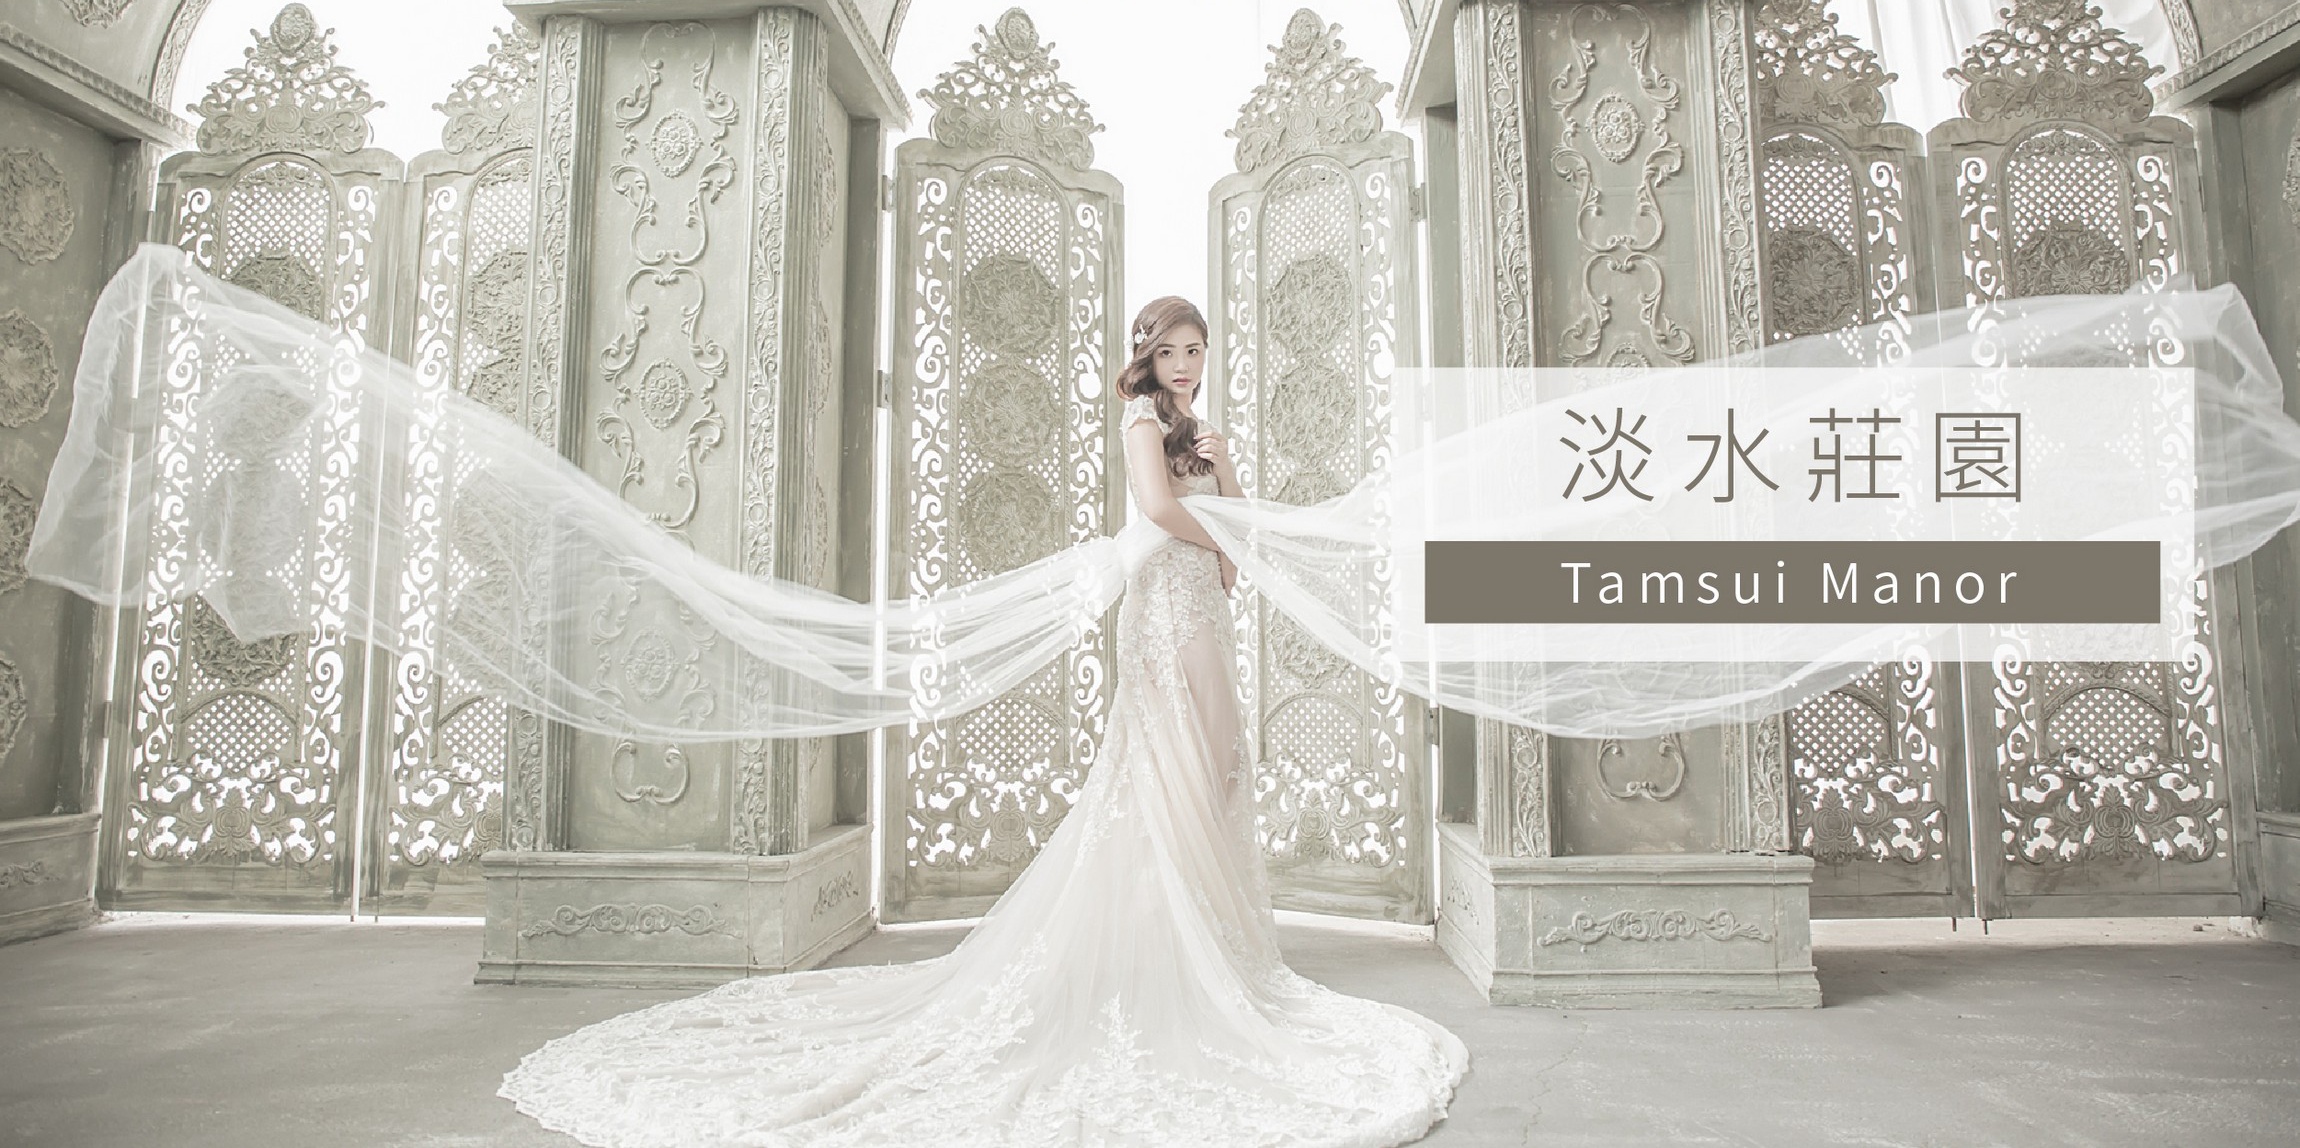 台北婚紗攝影,台北婚紗基地,台北婚紗照景點,婚紗照推薦 台北,台北拍婚紗